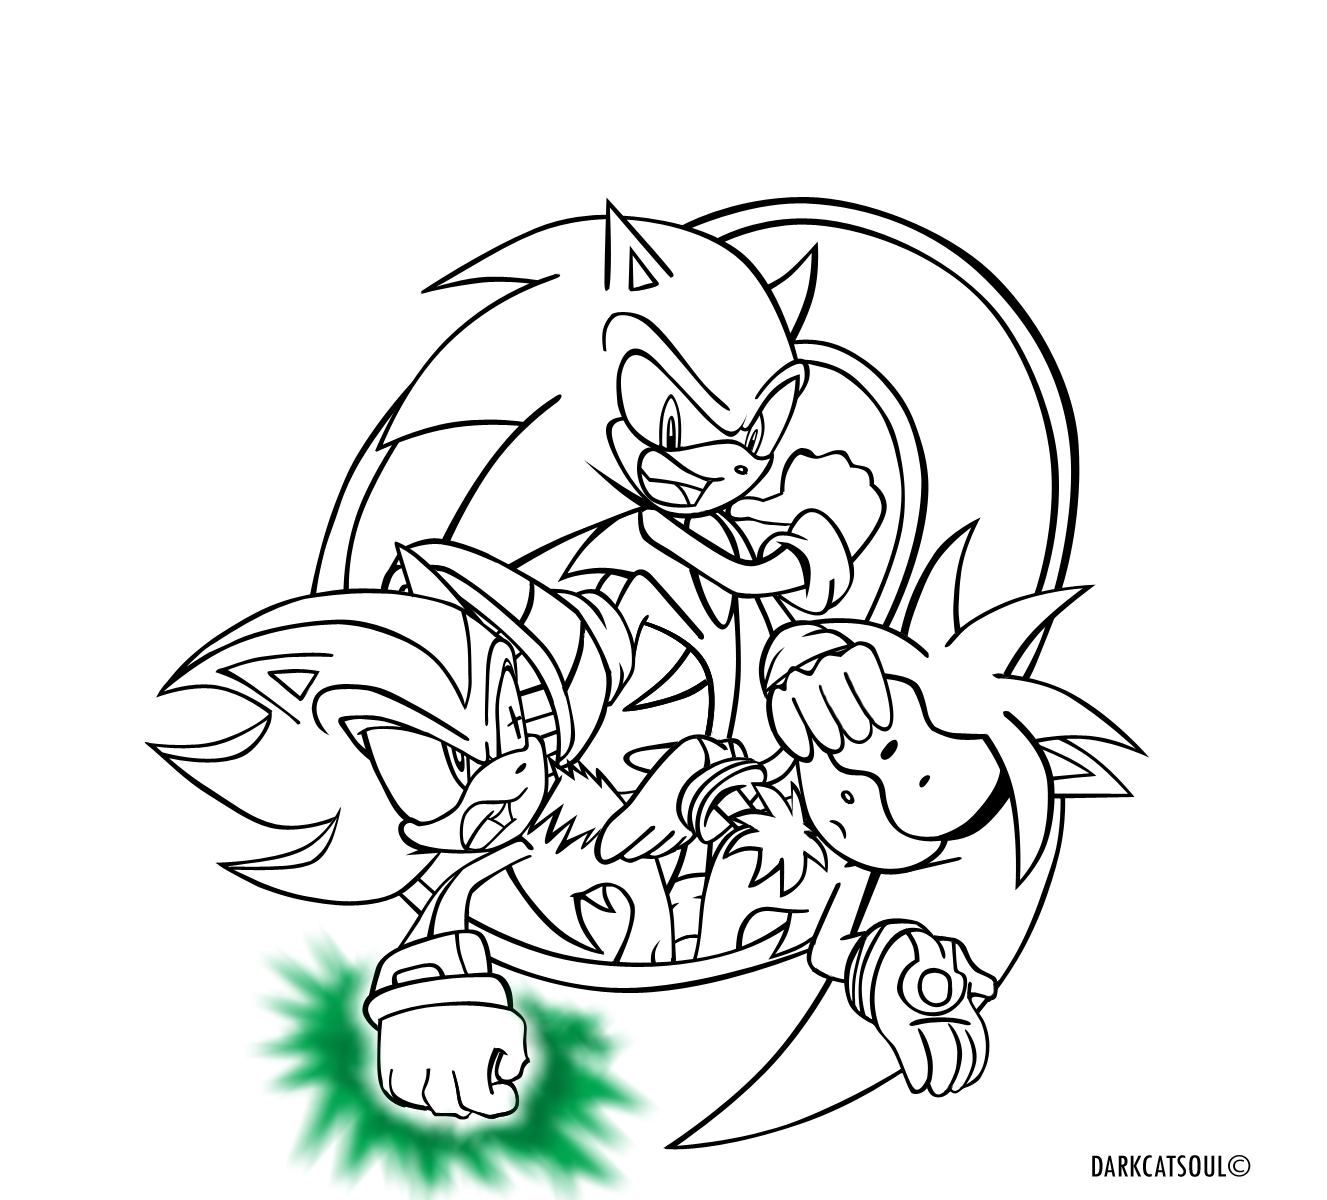 Sonic-Shadow-Silver.:lineart:. by DarkCatSoul on DeviantArt